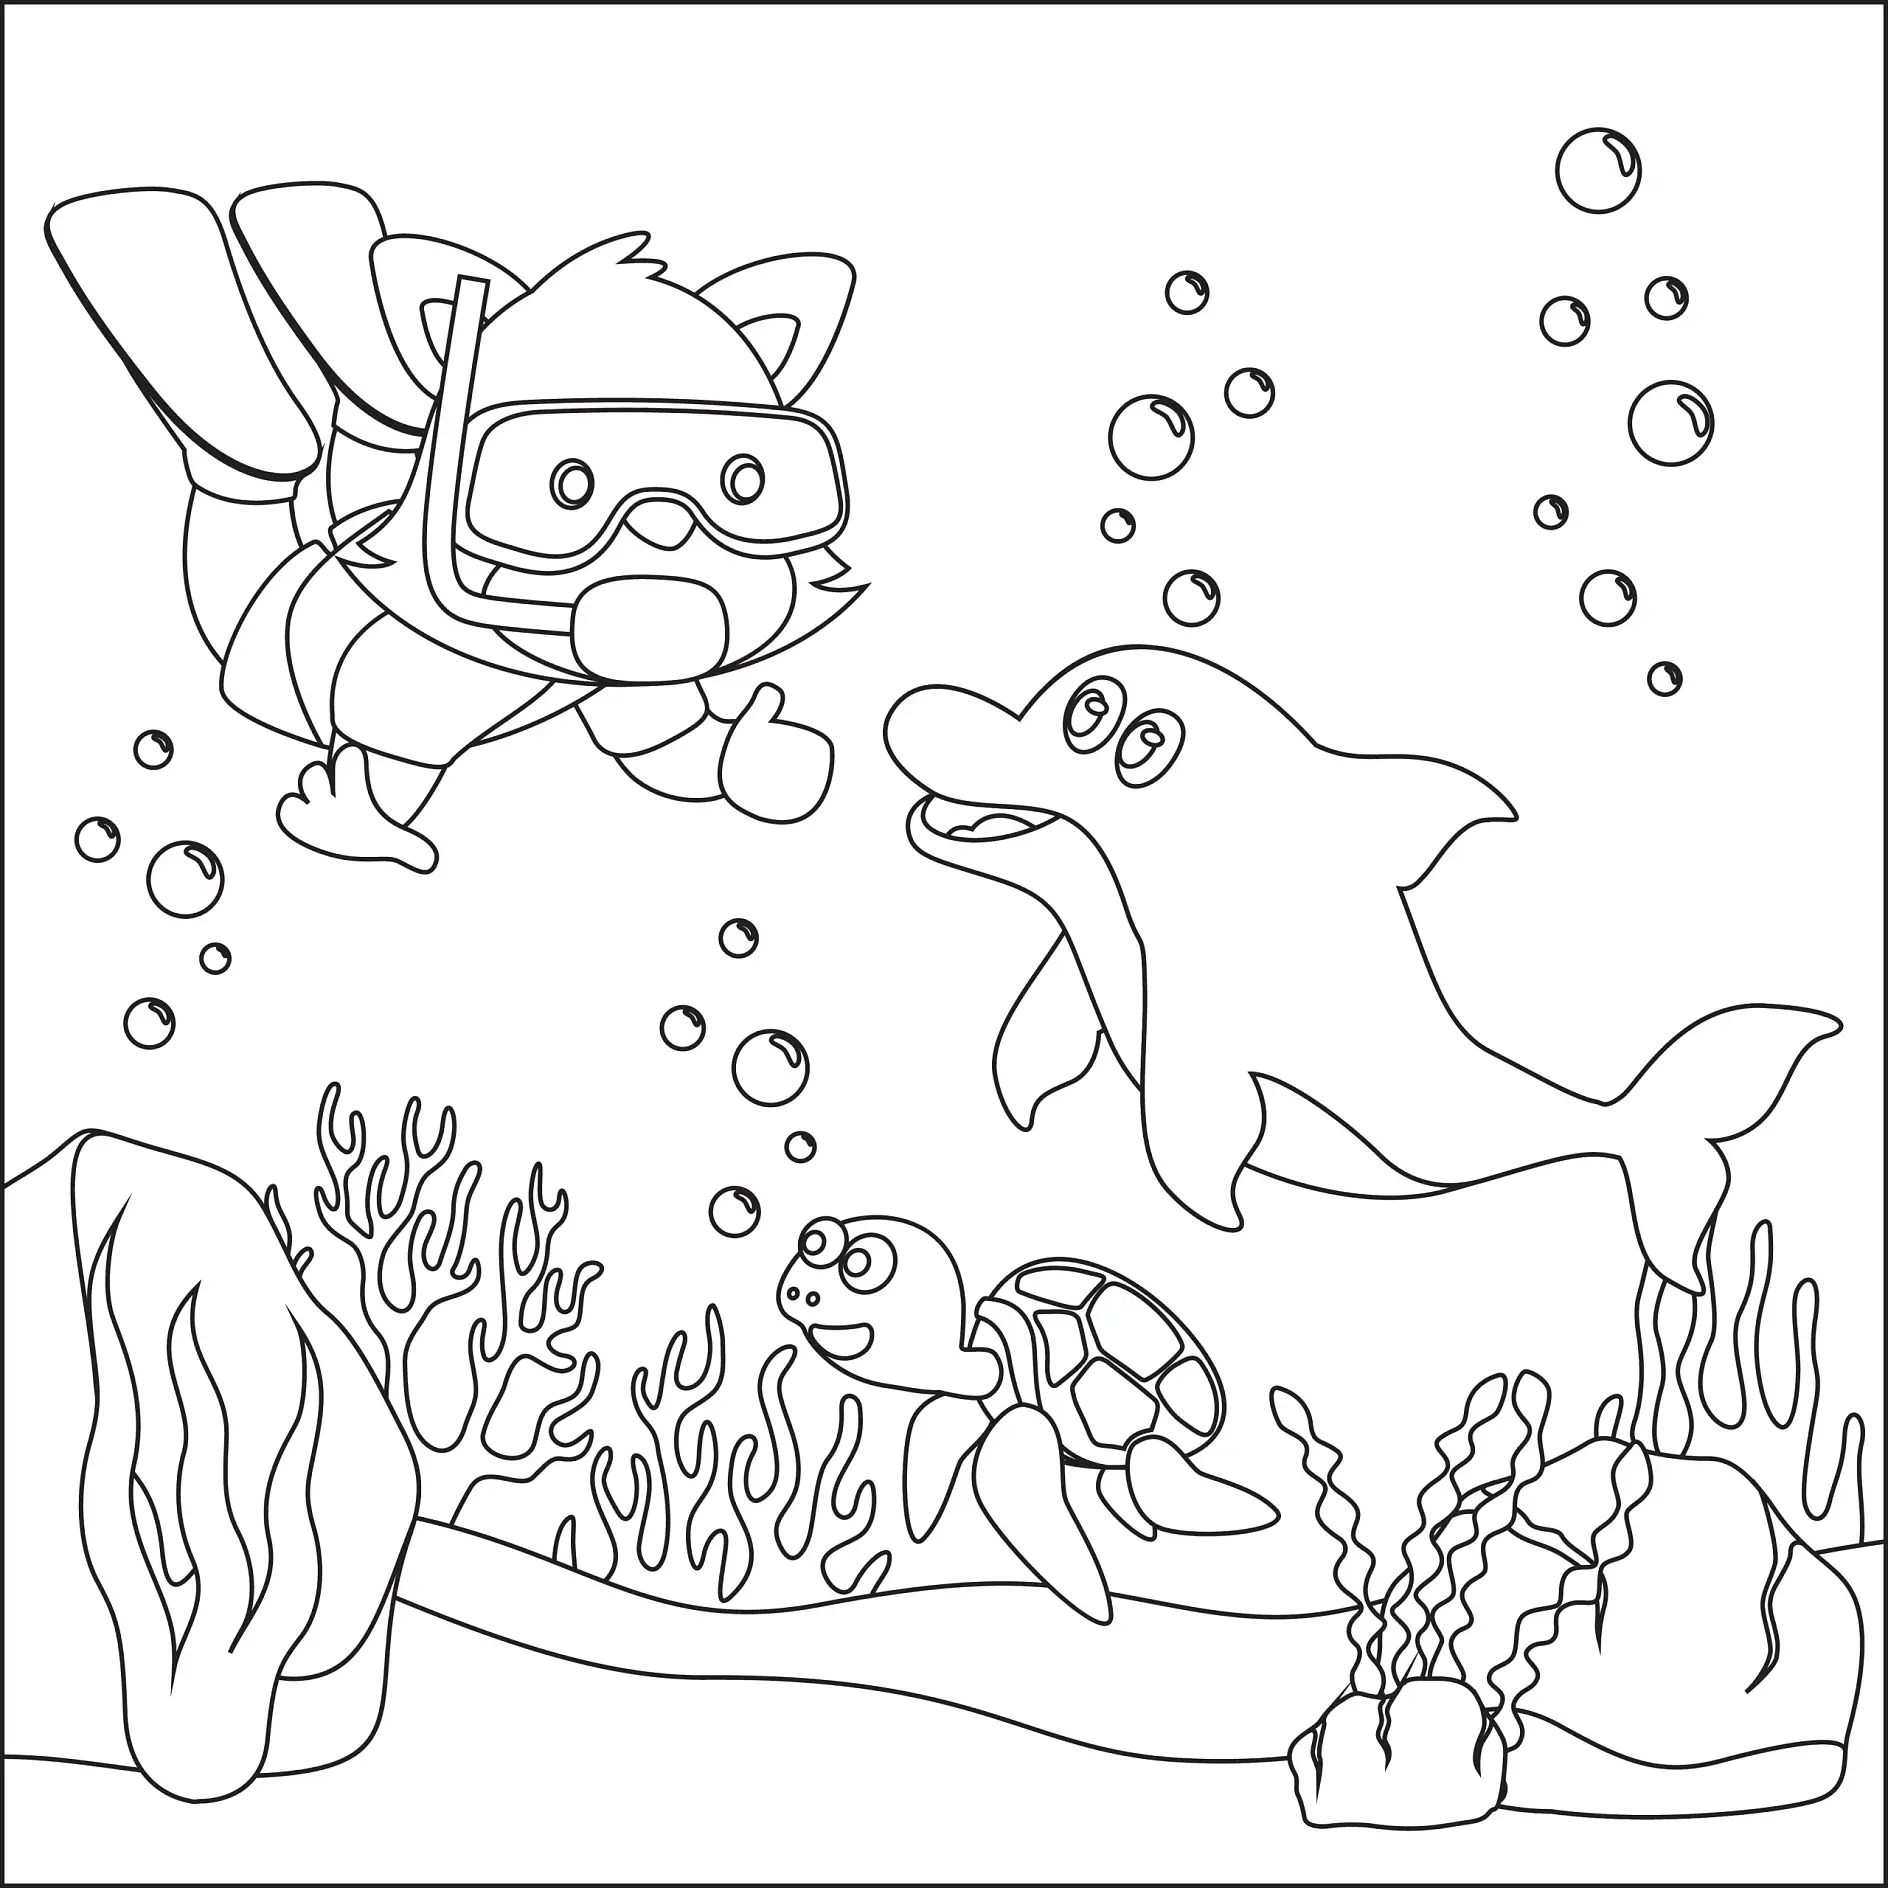 Ausmalbild Taucher, Delfin und Schildkröte unter Wasser mit Algen